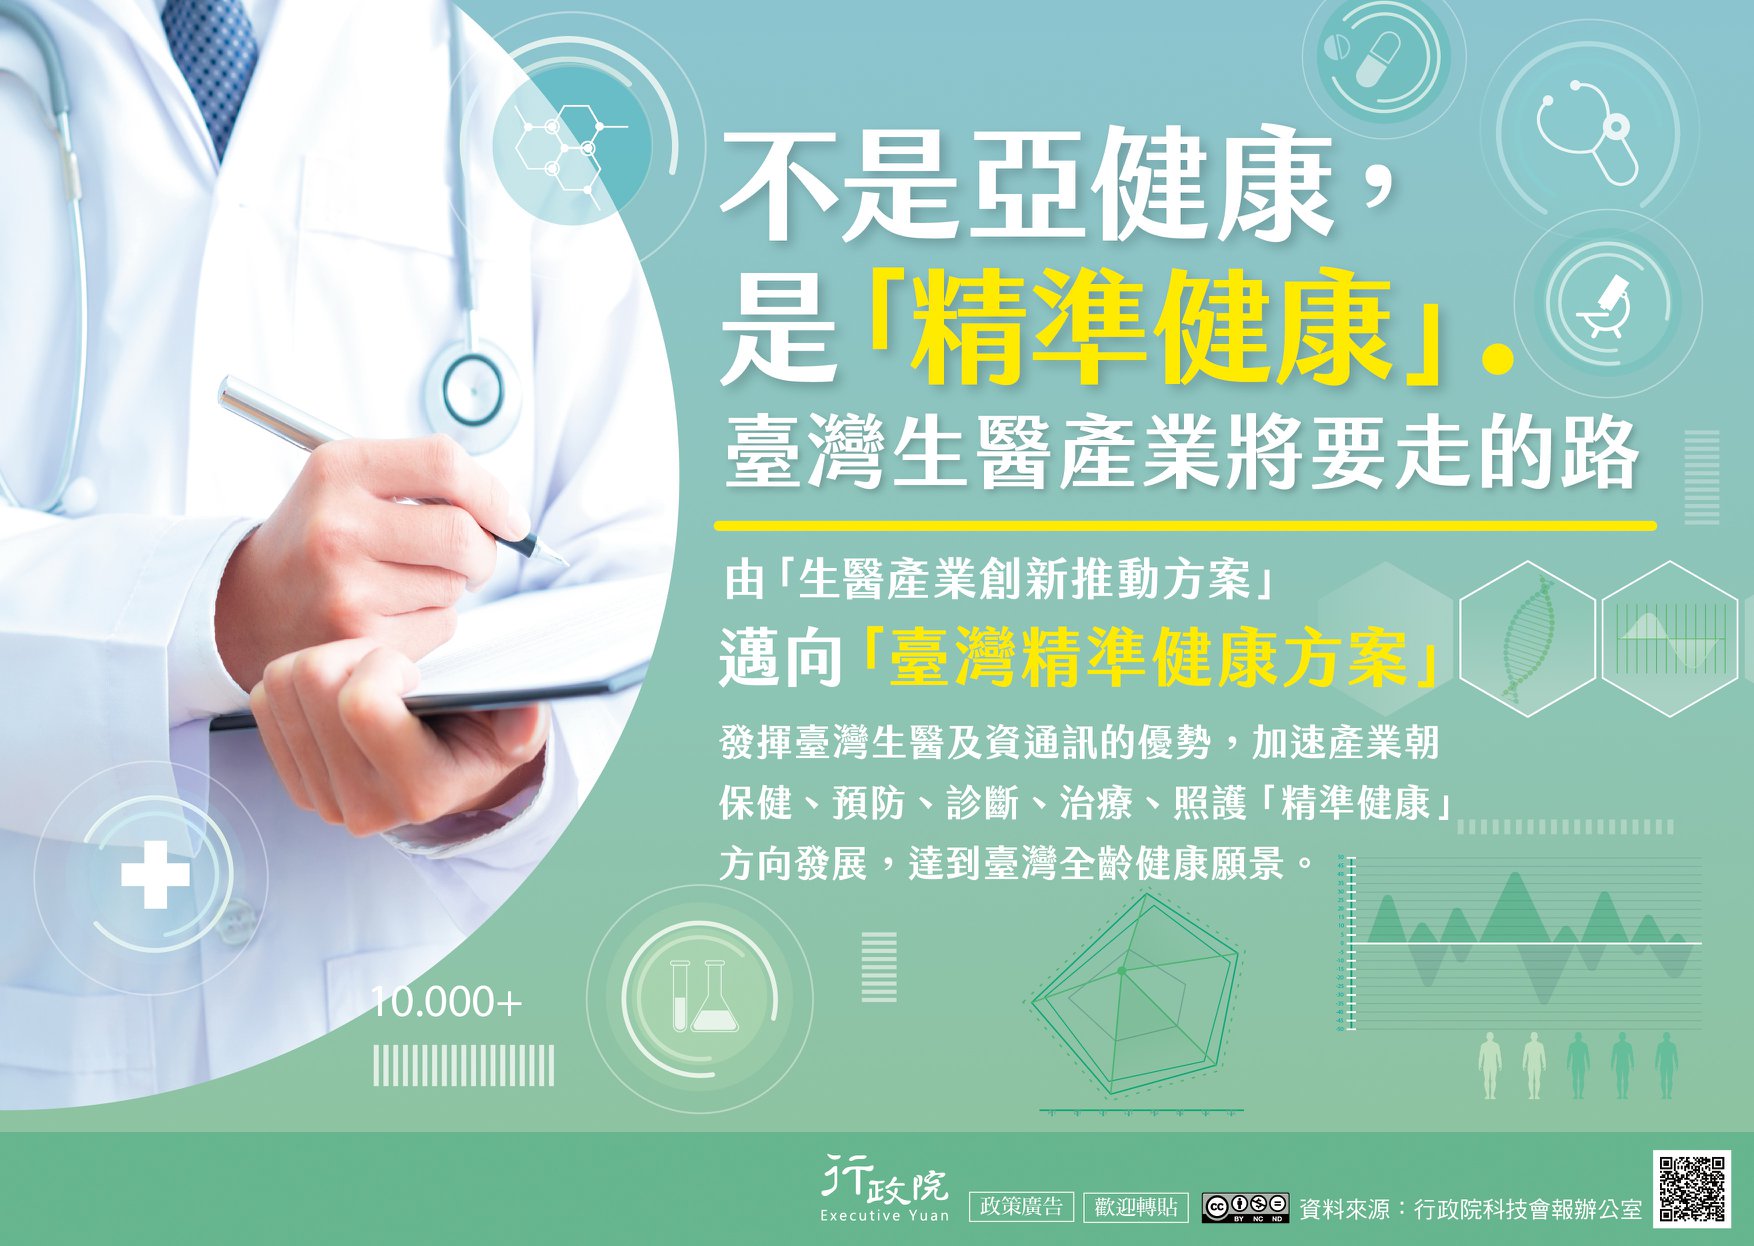 政策文宣~ 不是亞健康，是「精準健康」 臺灣生醫產業將要走的路